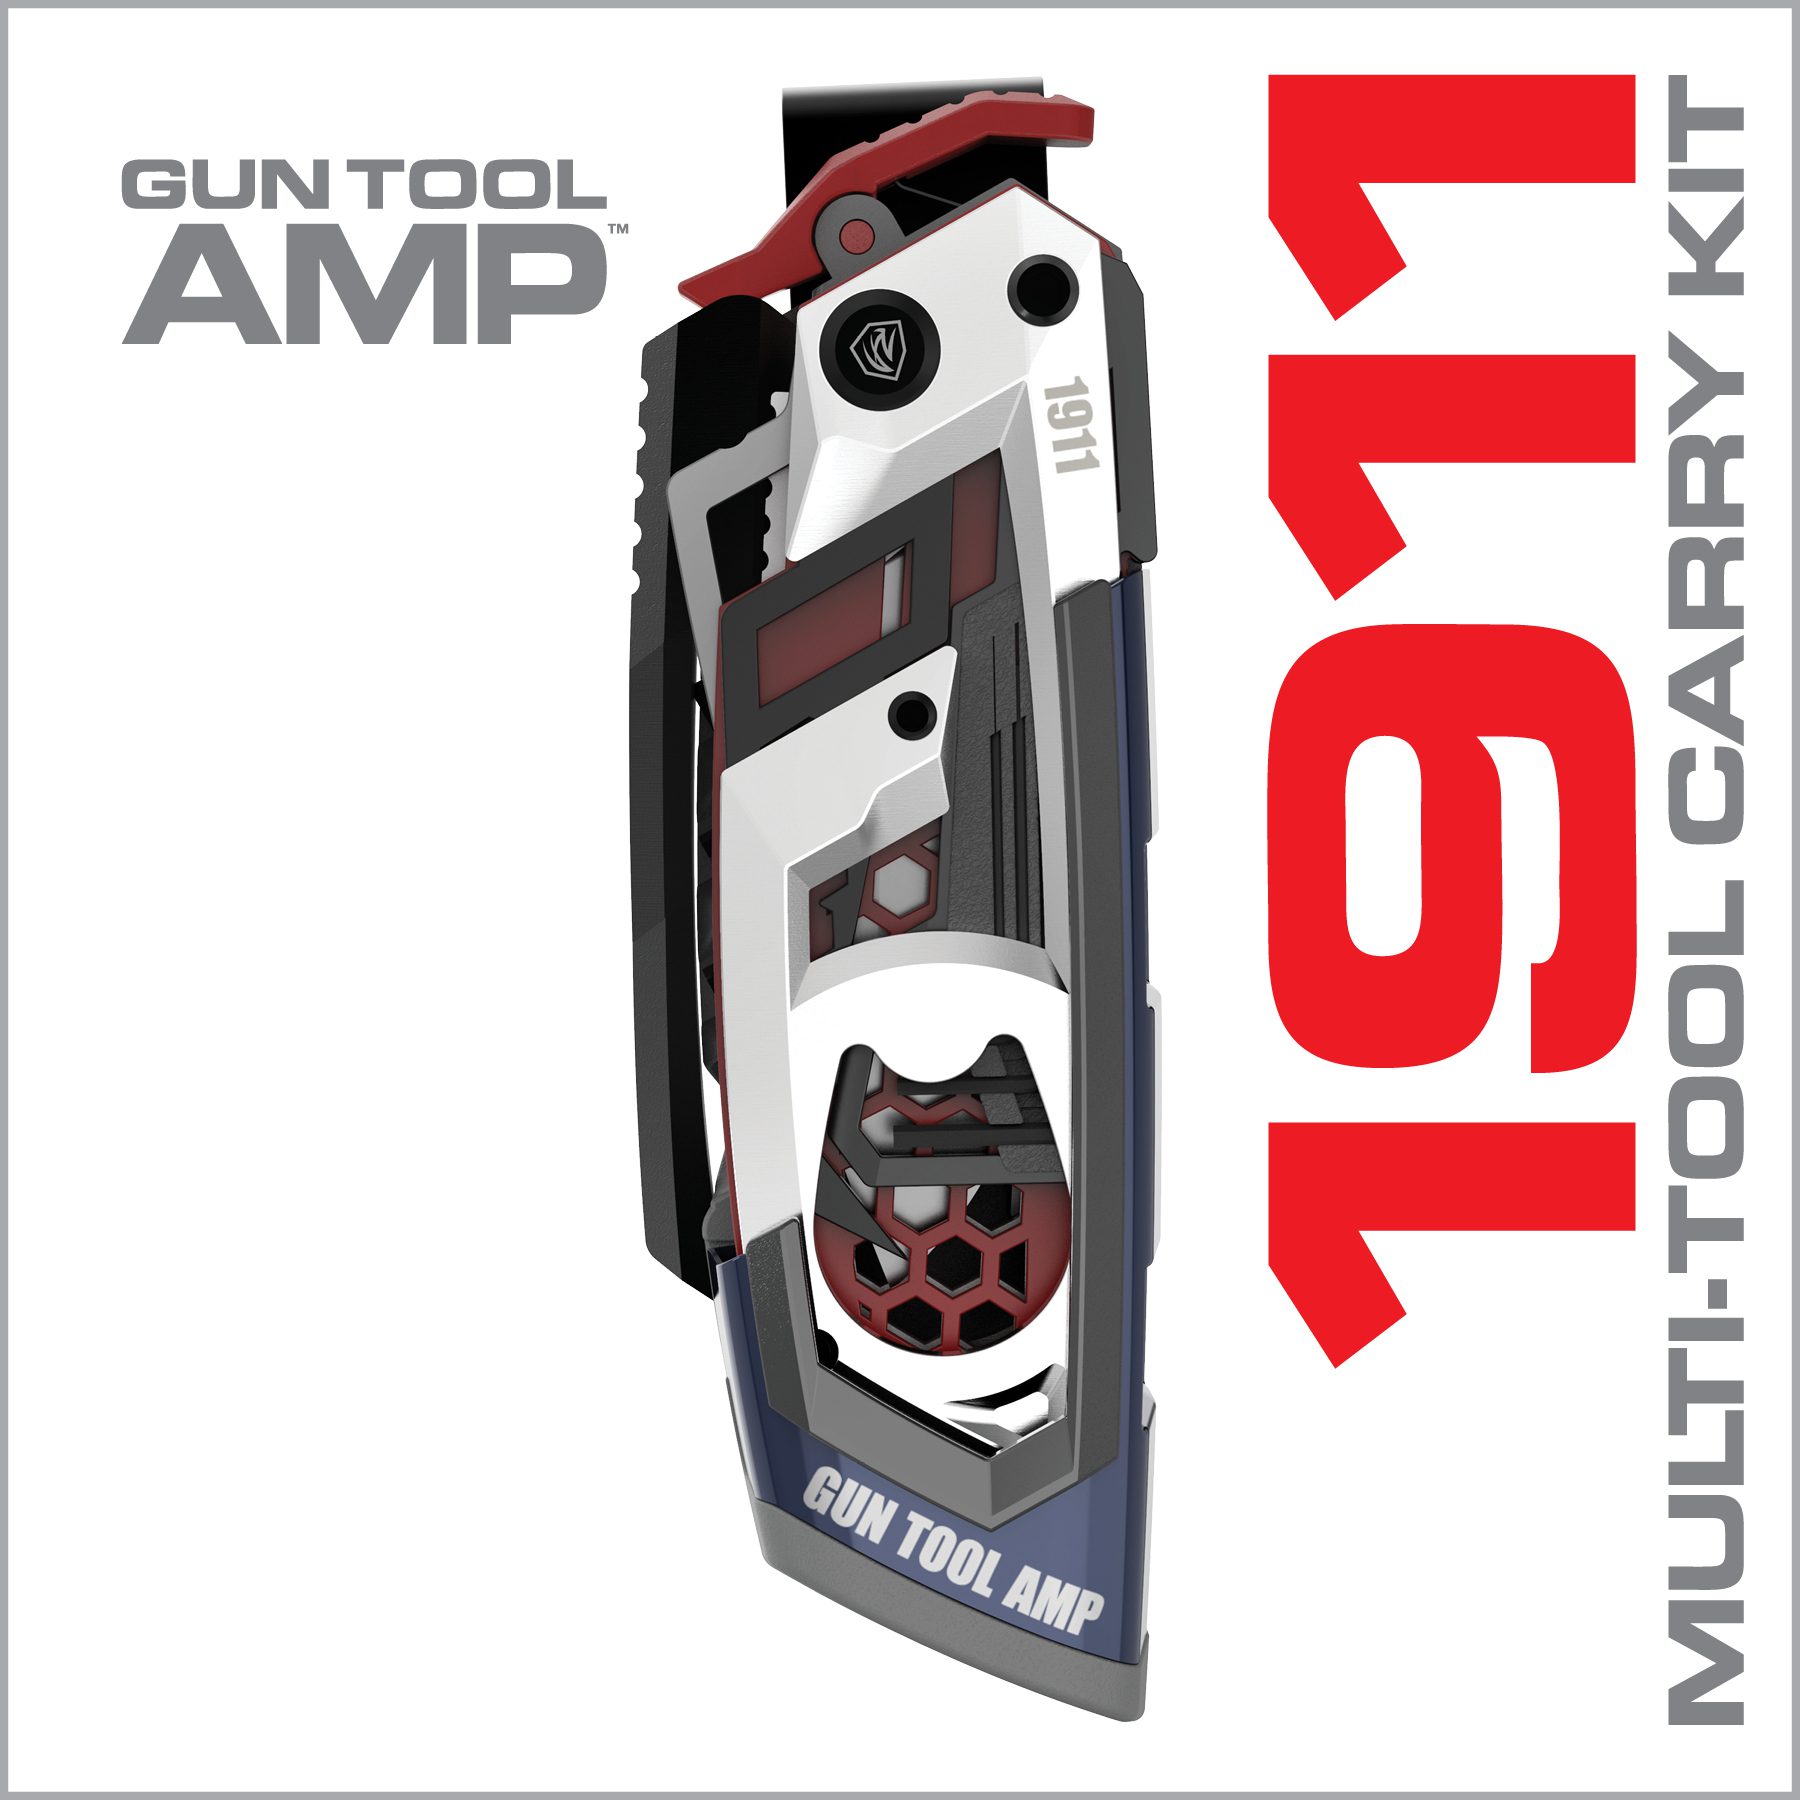 an advertisement for a gun tool amp